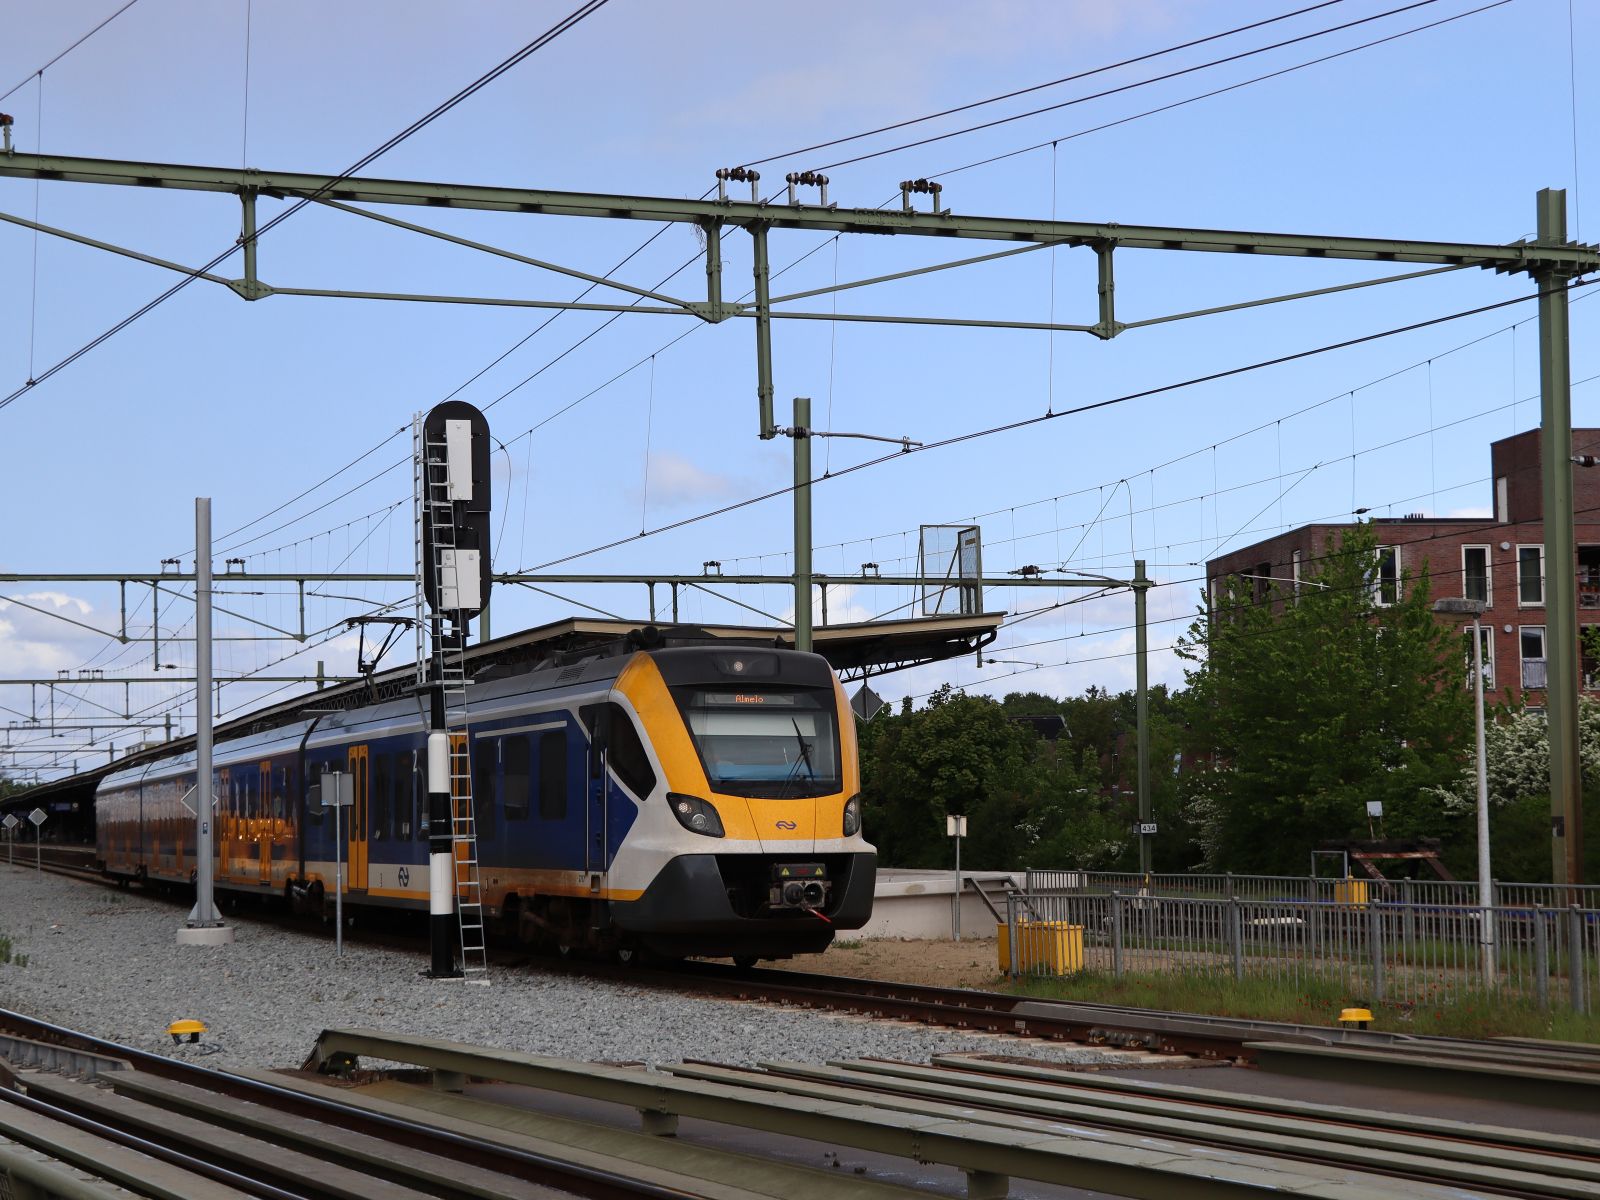 NS SNG-4 Triebzug 2717 Nahverkerhrszug 7035 von Apeldoorn nach Almelo. Abfahrt Bahnhof Deventer 16-05-2023.

NS SNG-4 treinstel 2717 als trein 7035 van Apeldoorn naar Almelo. Vertrek station Deventer 16-05-2023.